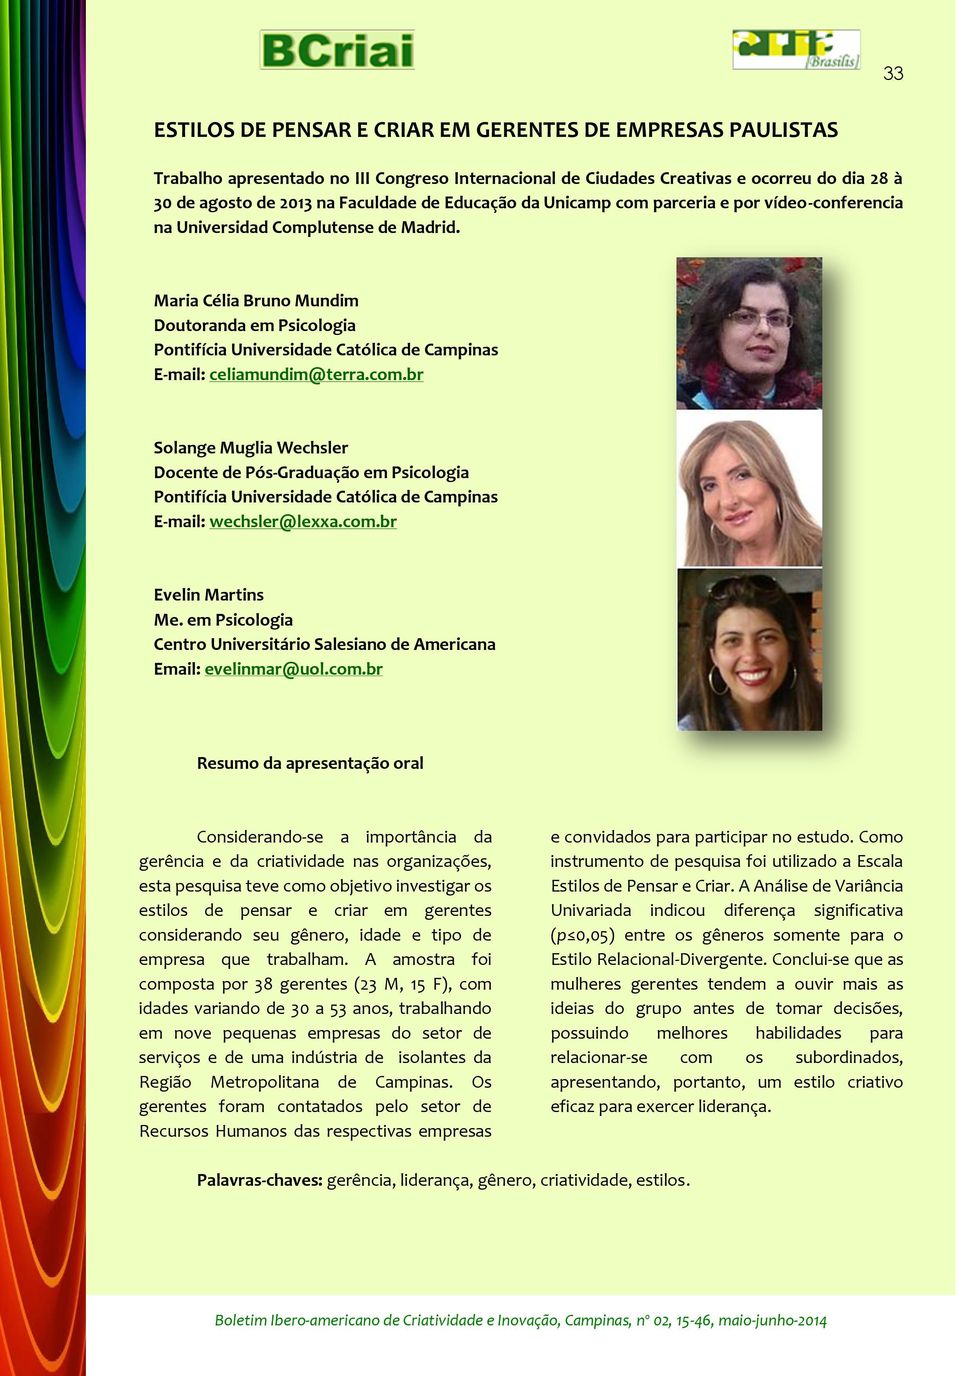 Maria Célia Bruno Mundim Doutoranda em Psicologia Pontifícia Universidade Católica de Campinas E-mail: celiamundim@terra.com.